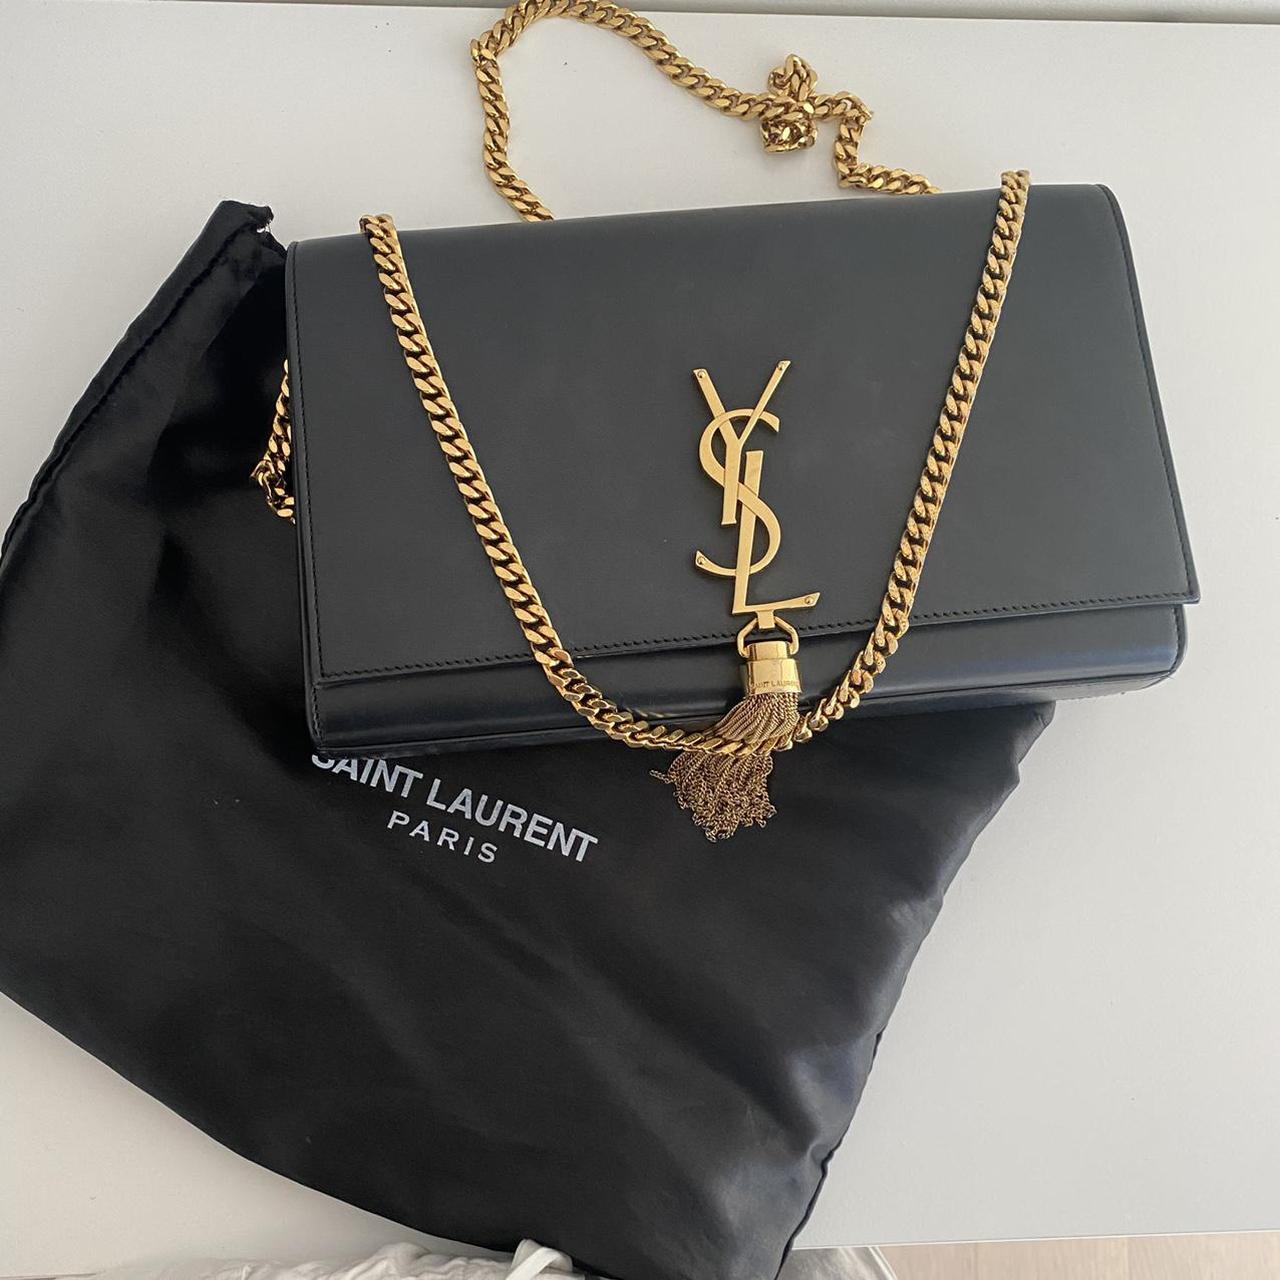 Authentic YSL bag/purse, Yves Saint Laurent Kate